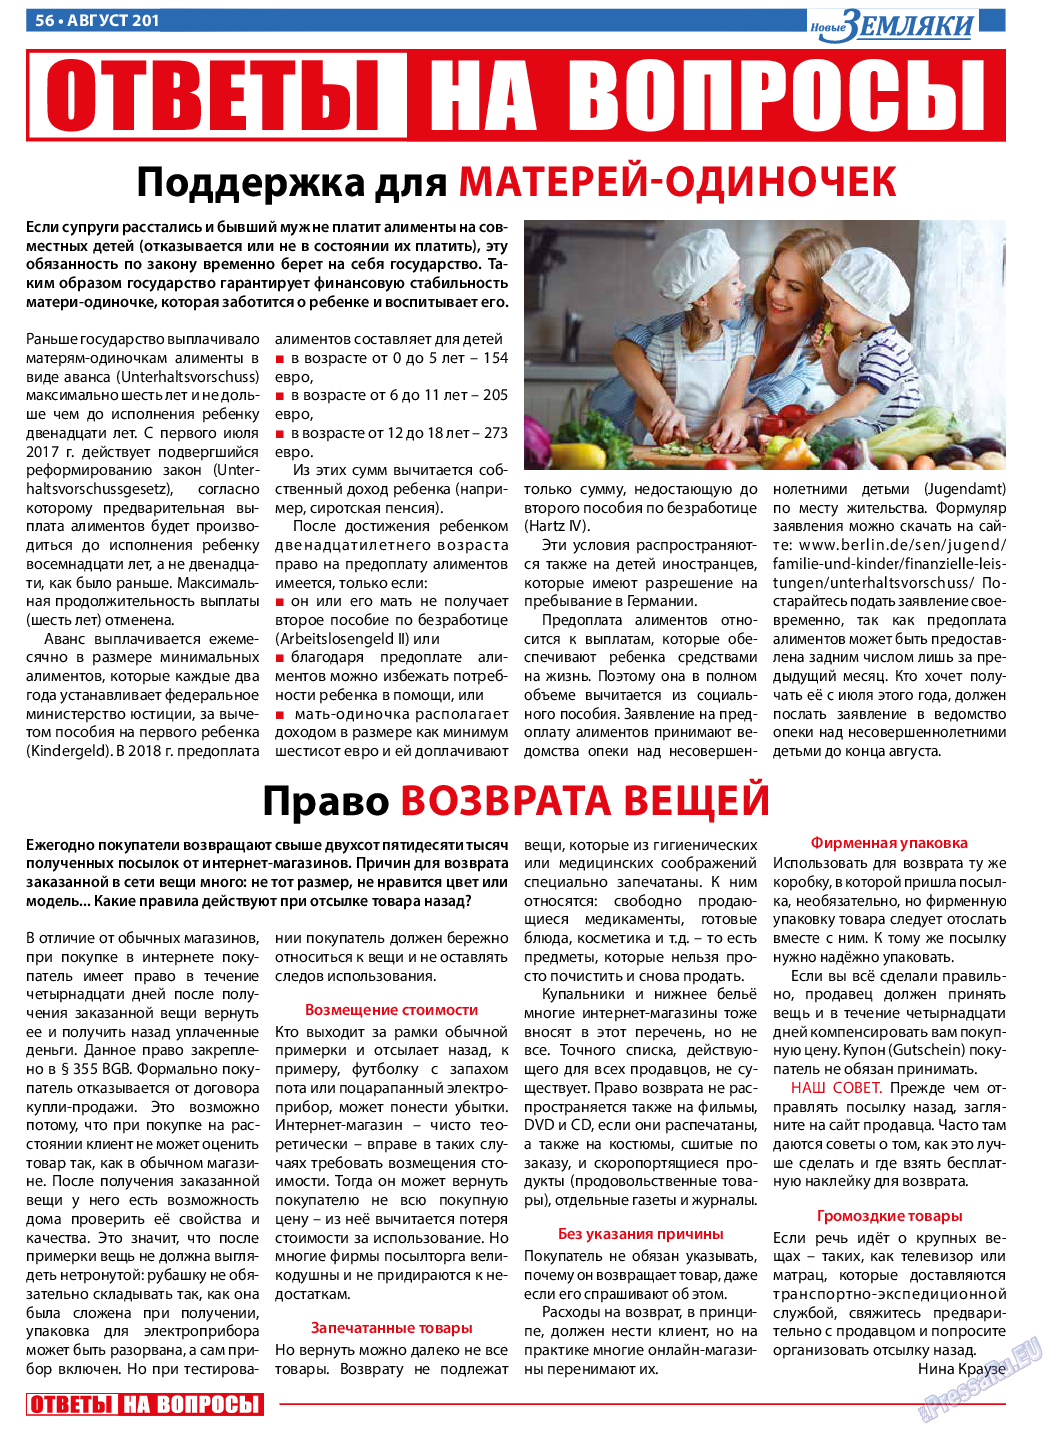 Новые Земляки, газета. 2018 №8 стр.56